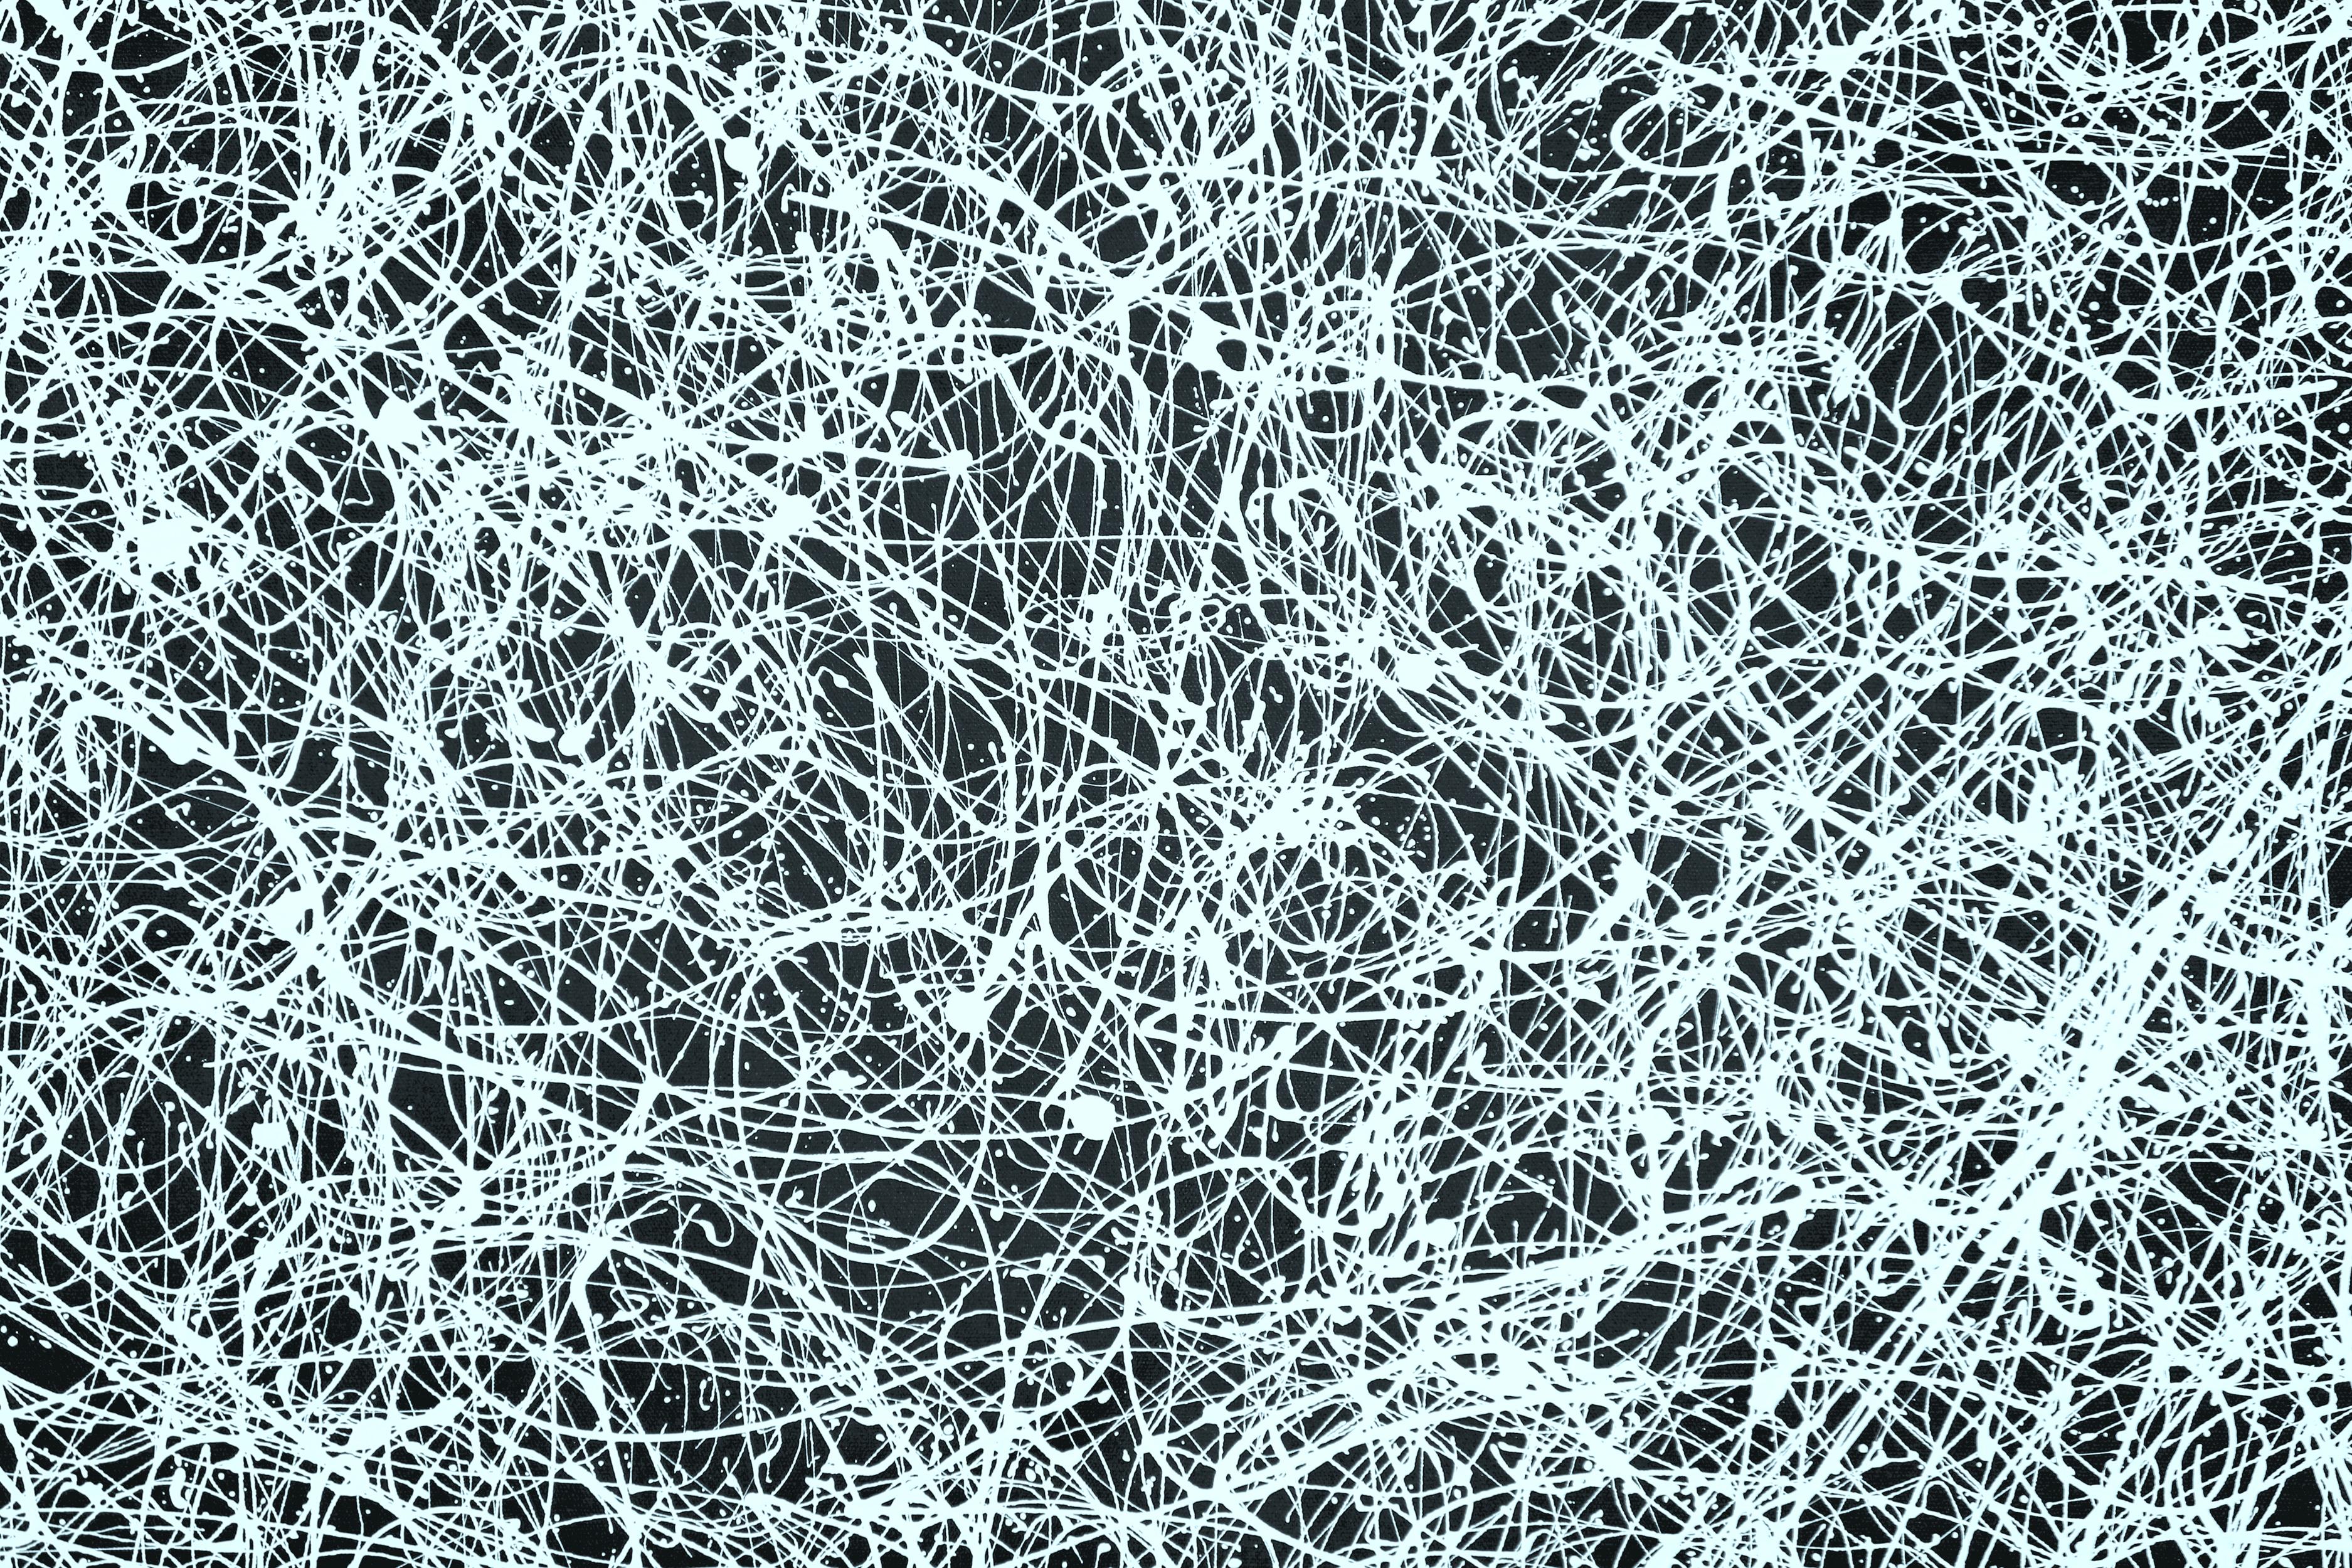 Kosmisches Netz (Grau), Abstract Painting, von Estelle Asmodelle